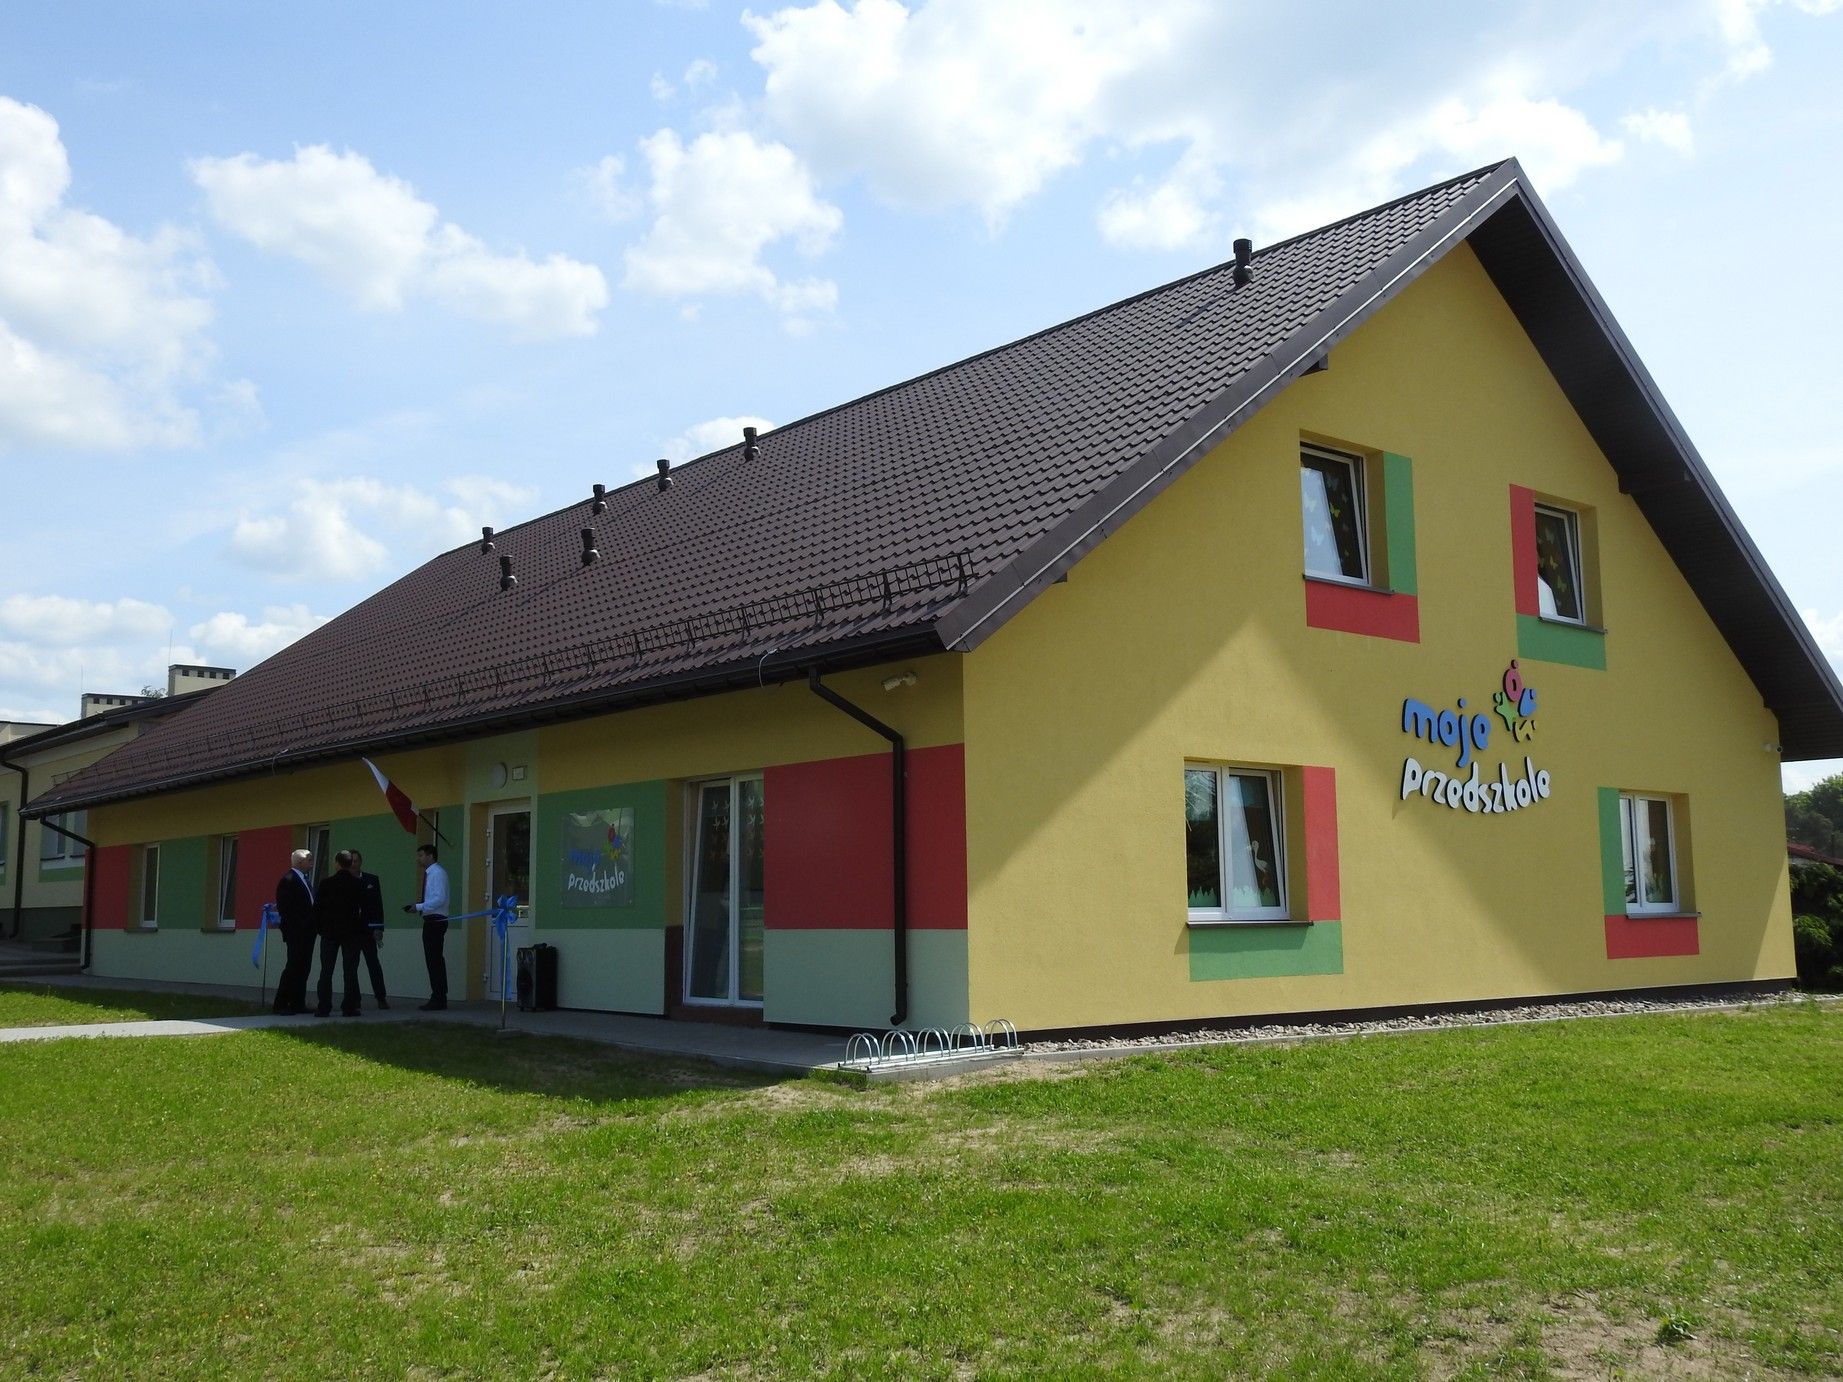 Oficjalne otwarcie przedszkola w Sztabinie

        

        


DSCN 5195




    
...